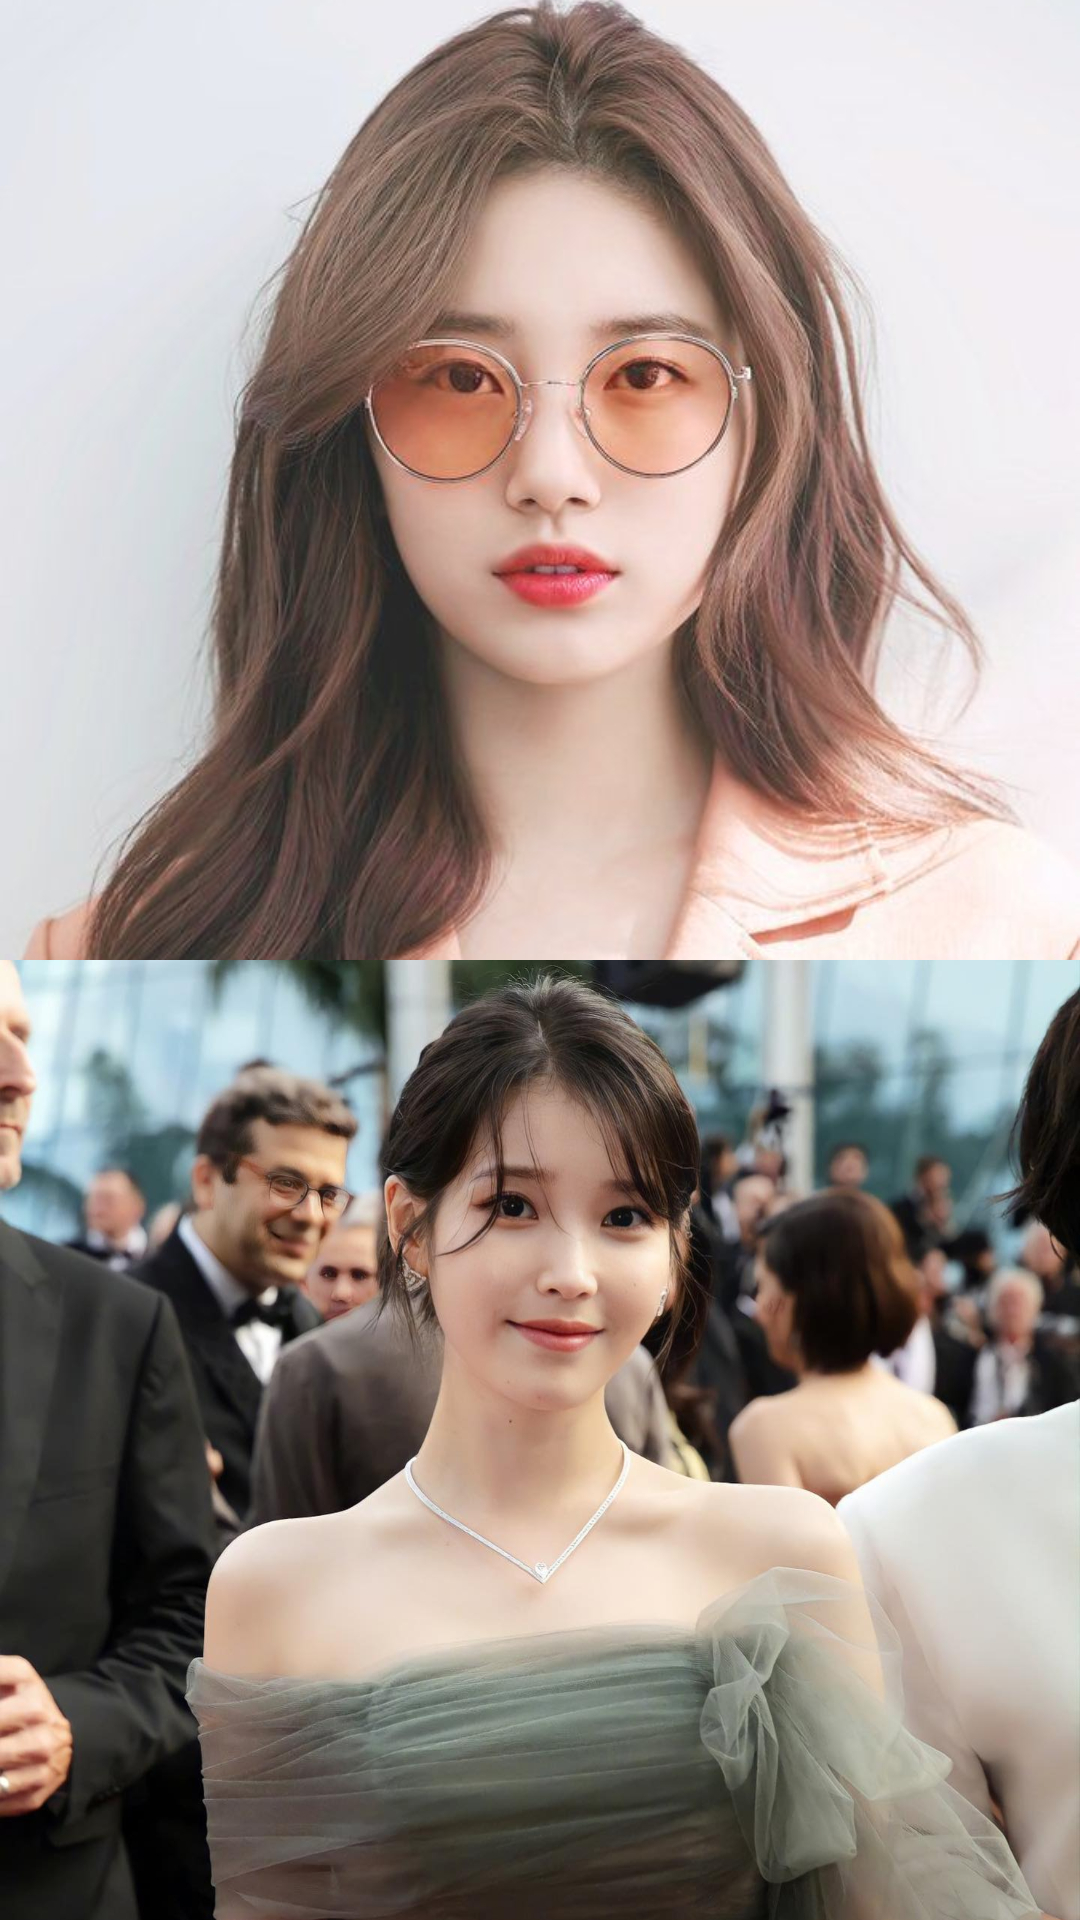 Popular female K-pop idols who turned K-drama actresses